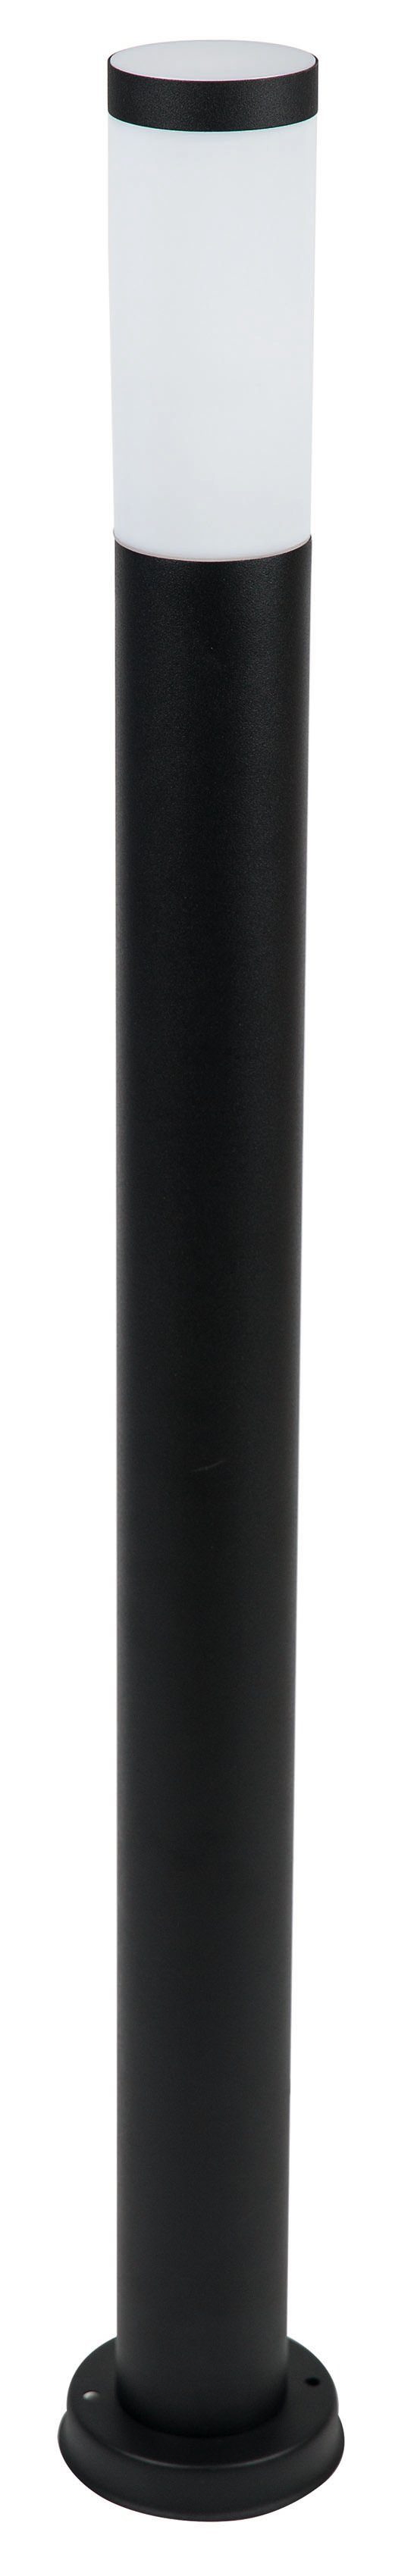 HEITRONIC Sockelleuchte Larisa, ohne Leuchtmittel, Pollerleuchte,Sockelleuchte,Außenlampe, Edelstahl (schwarz lackiert)